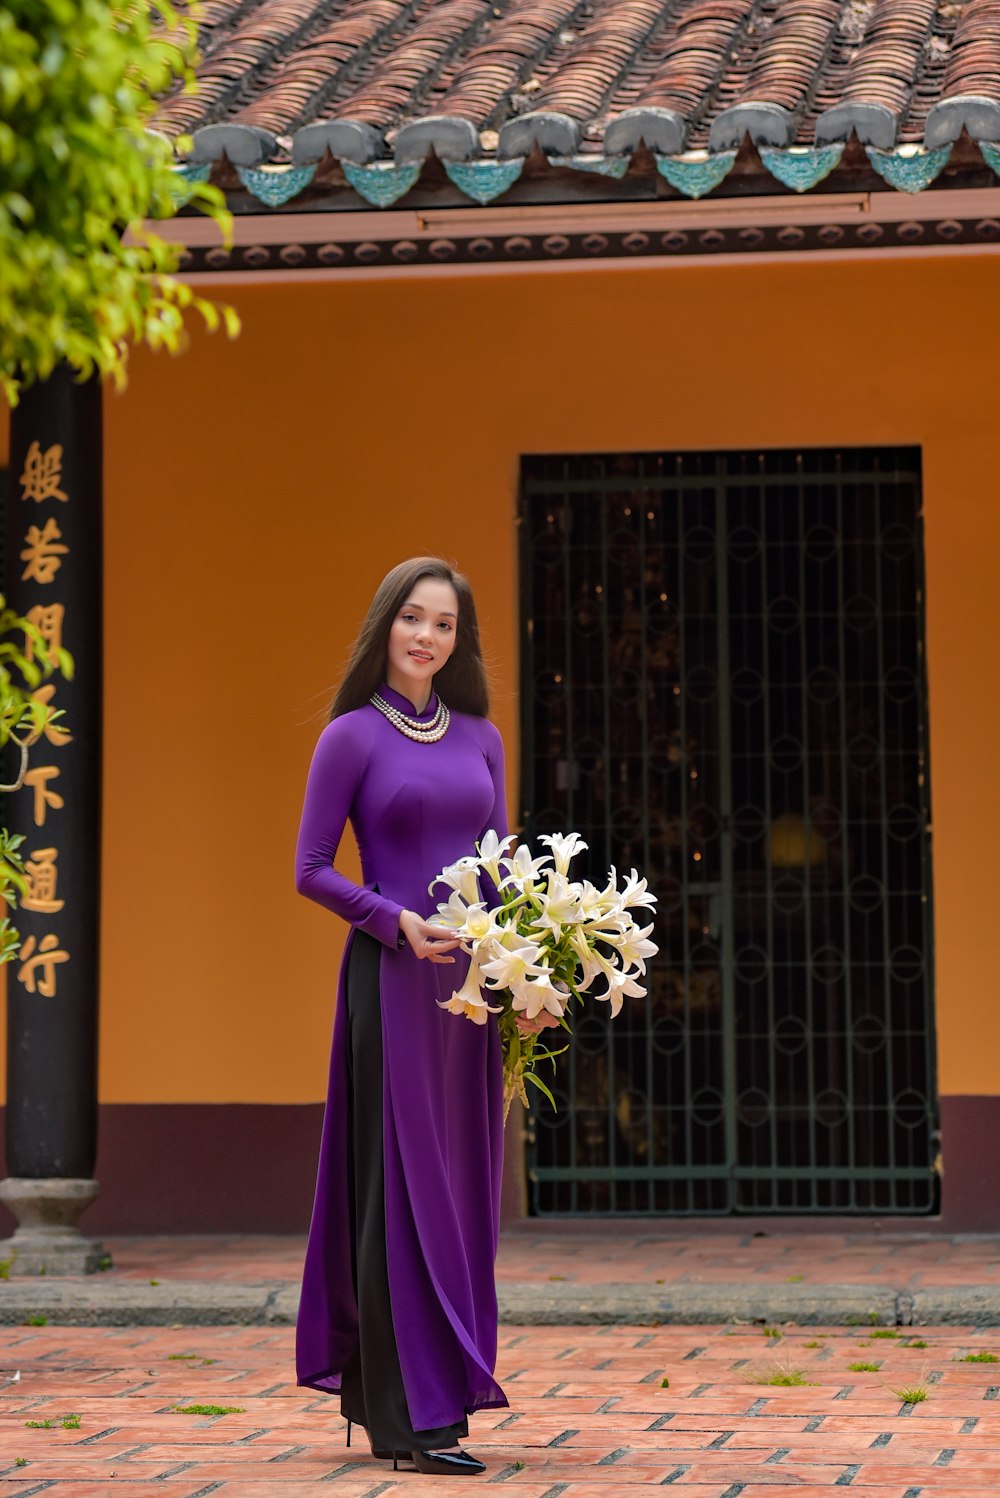 woman in purple long sleeve dress holding bouquet of flowers